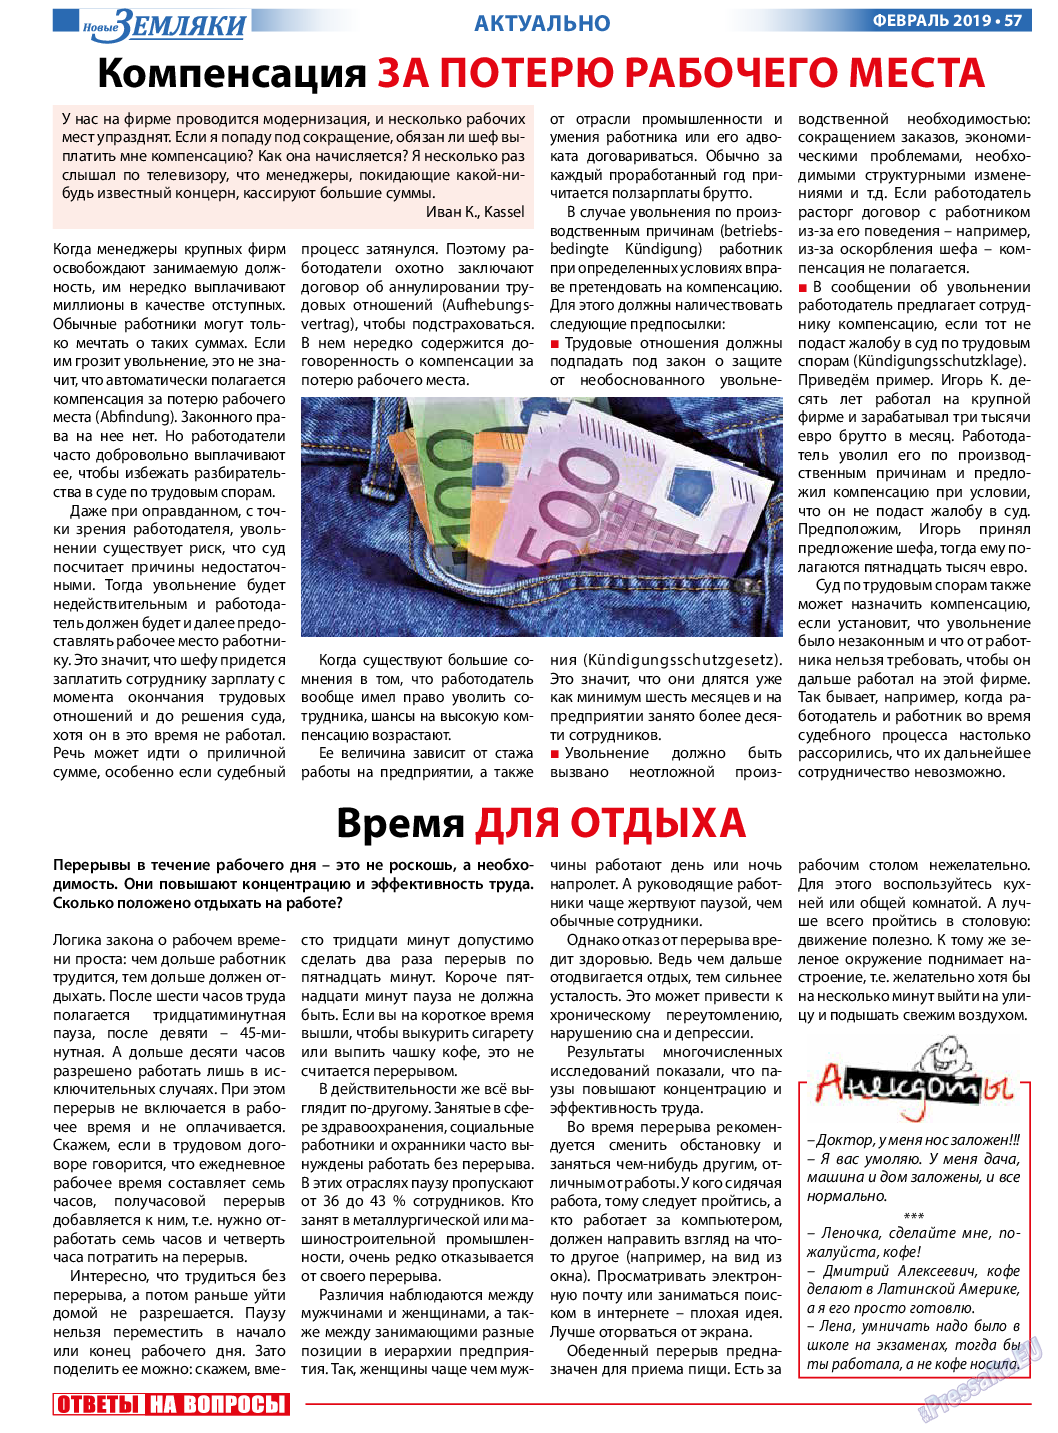 Новые Земляки, газета. 2019 №2 стр.57